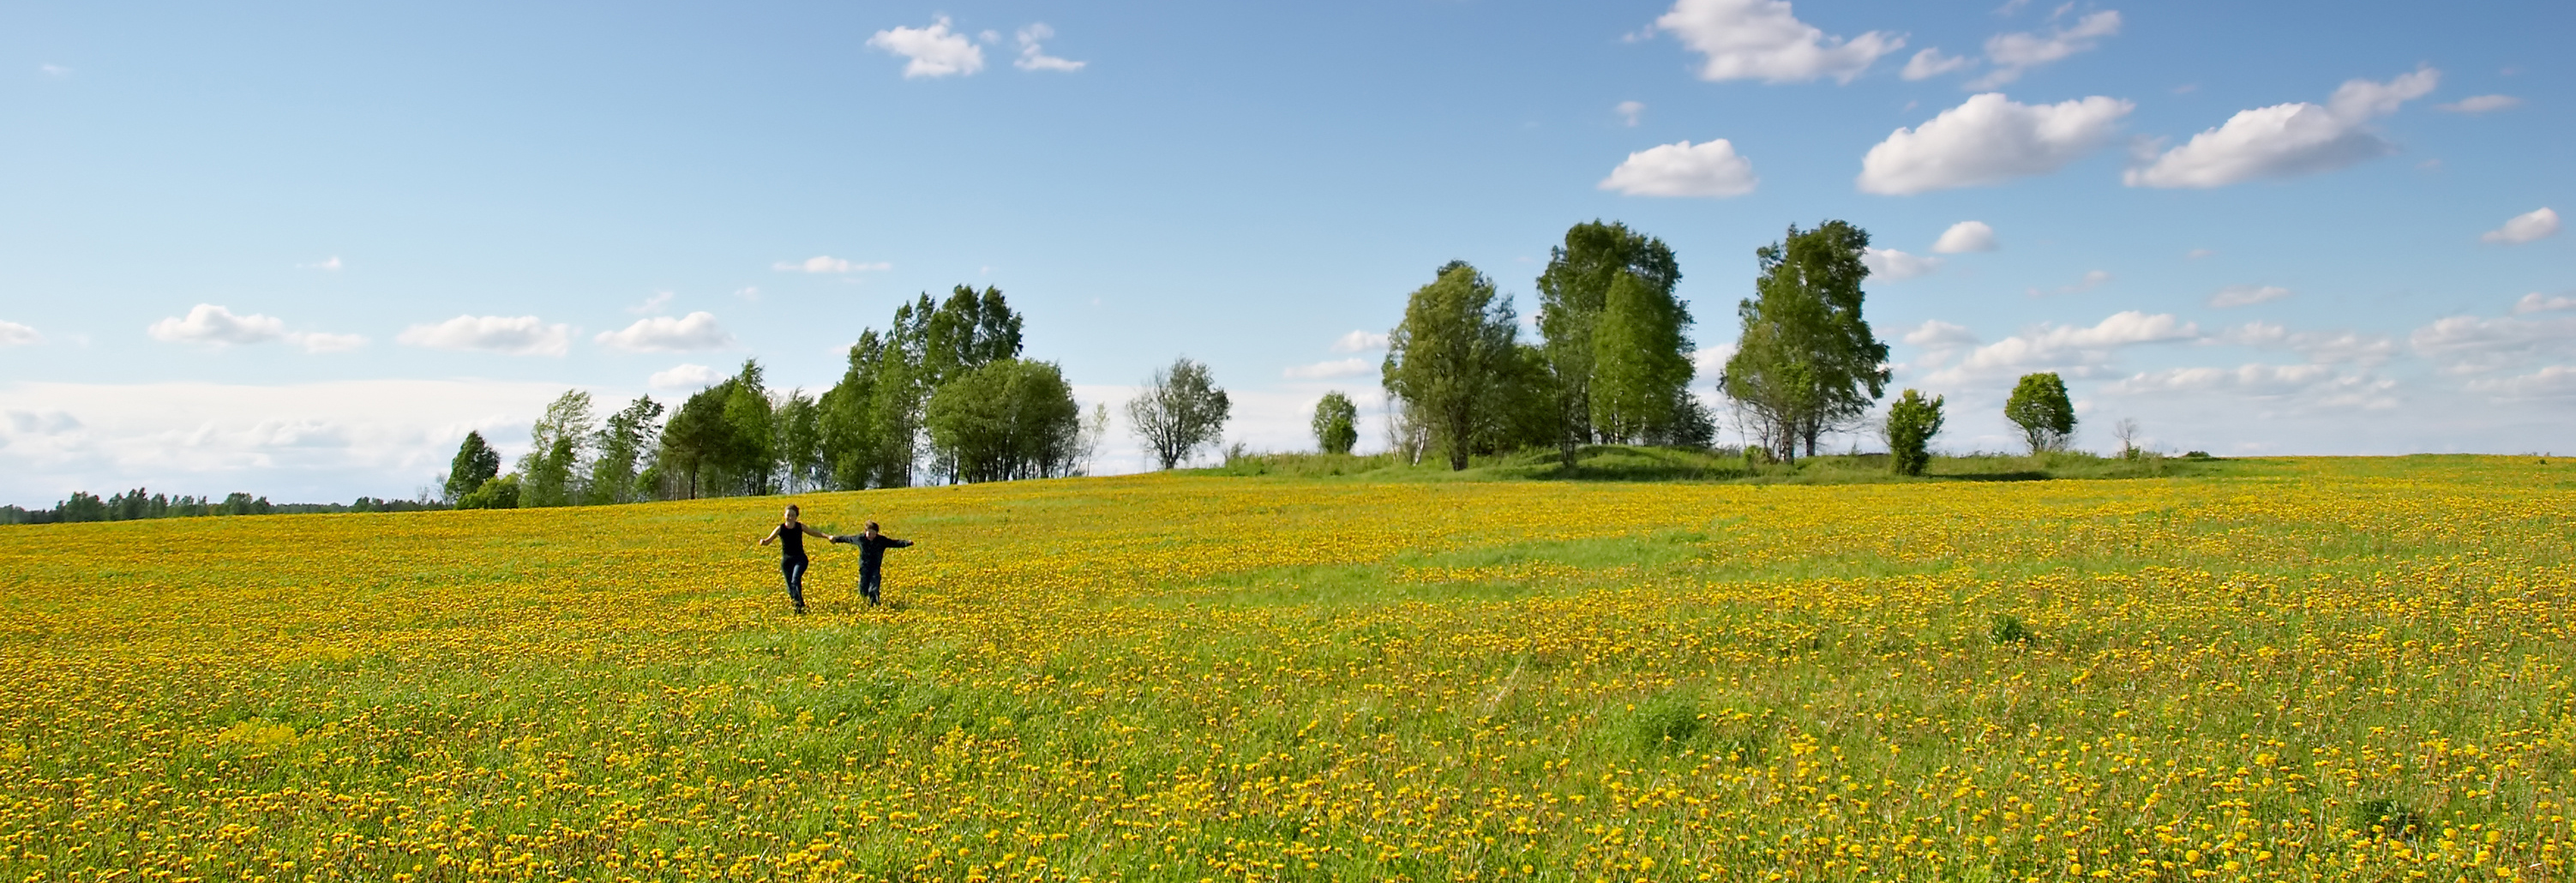 Personen laufen über eine grüne Wiese - ©AdobeStock_798386kleiner_Oleg Kozlov